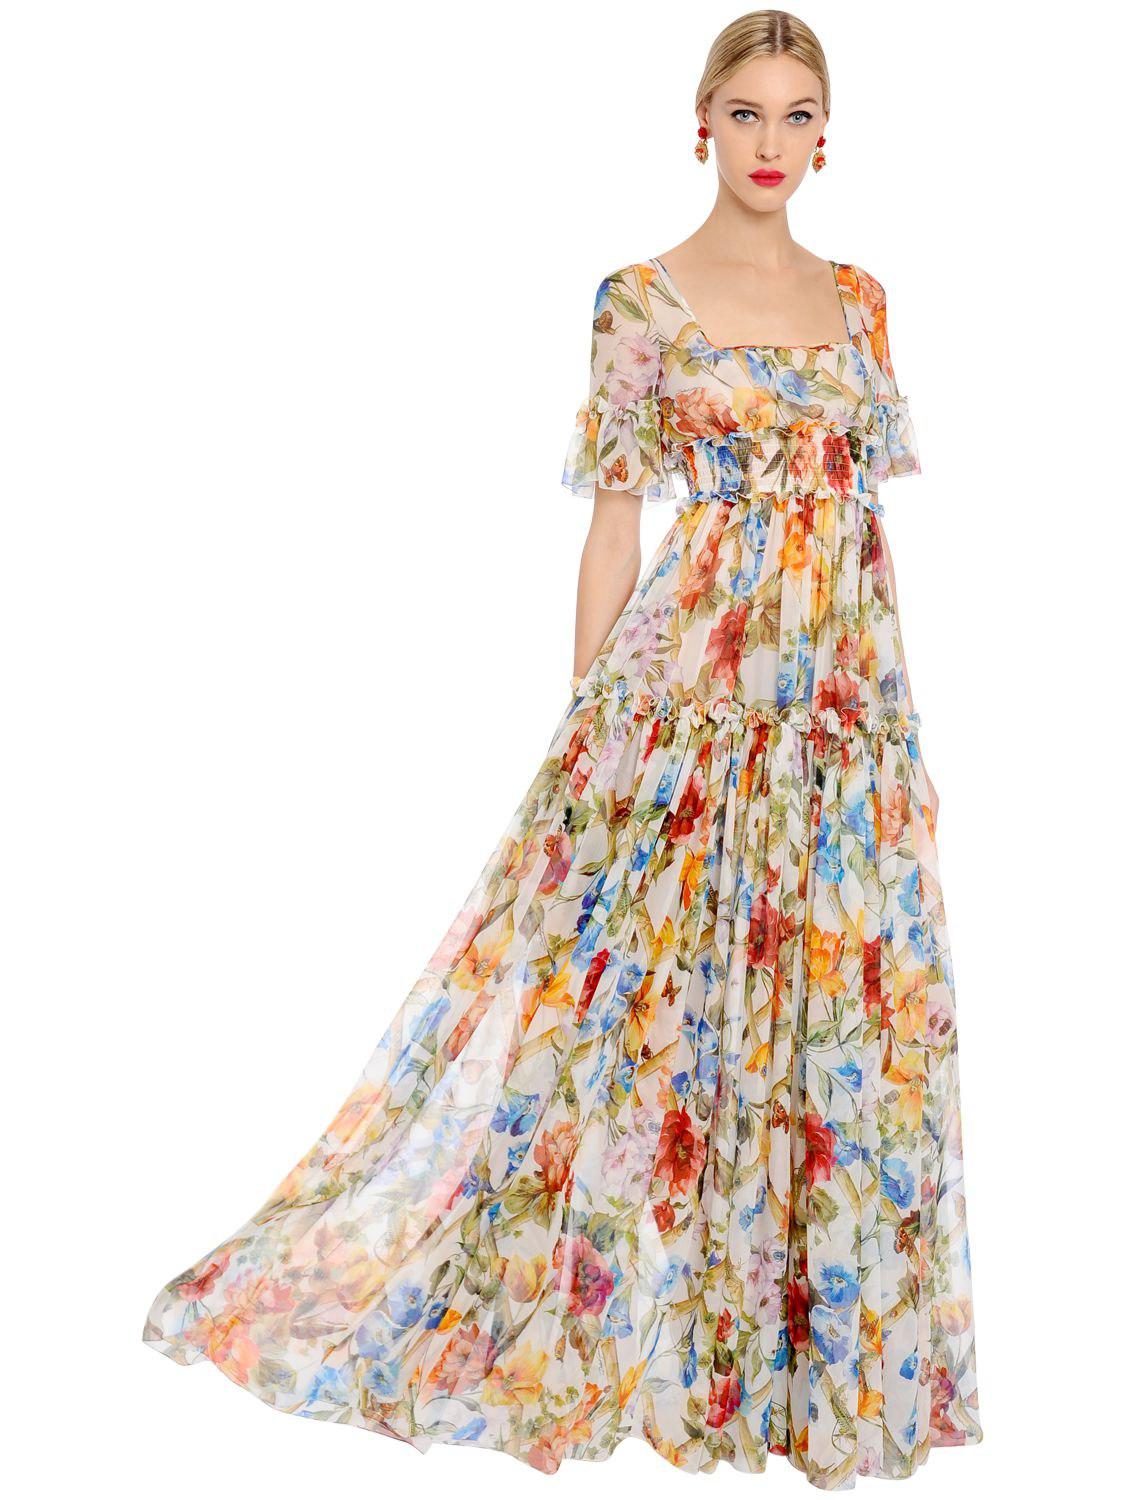 Dolce Gabbana Dress Sale Uk | The Art 